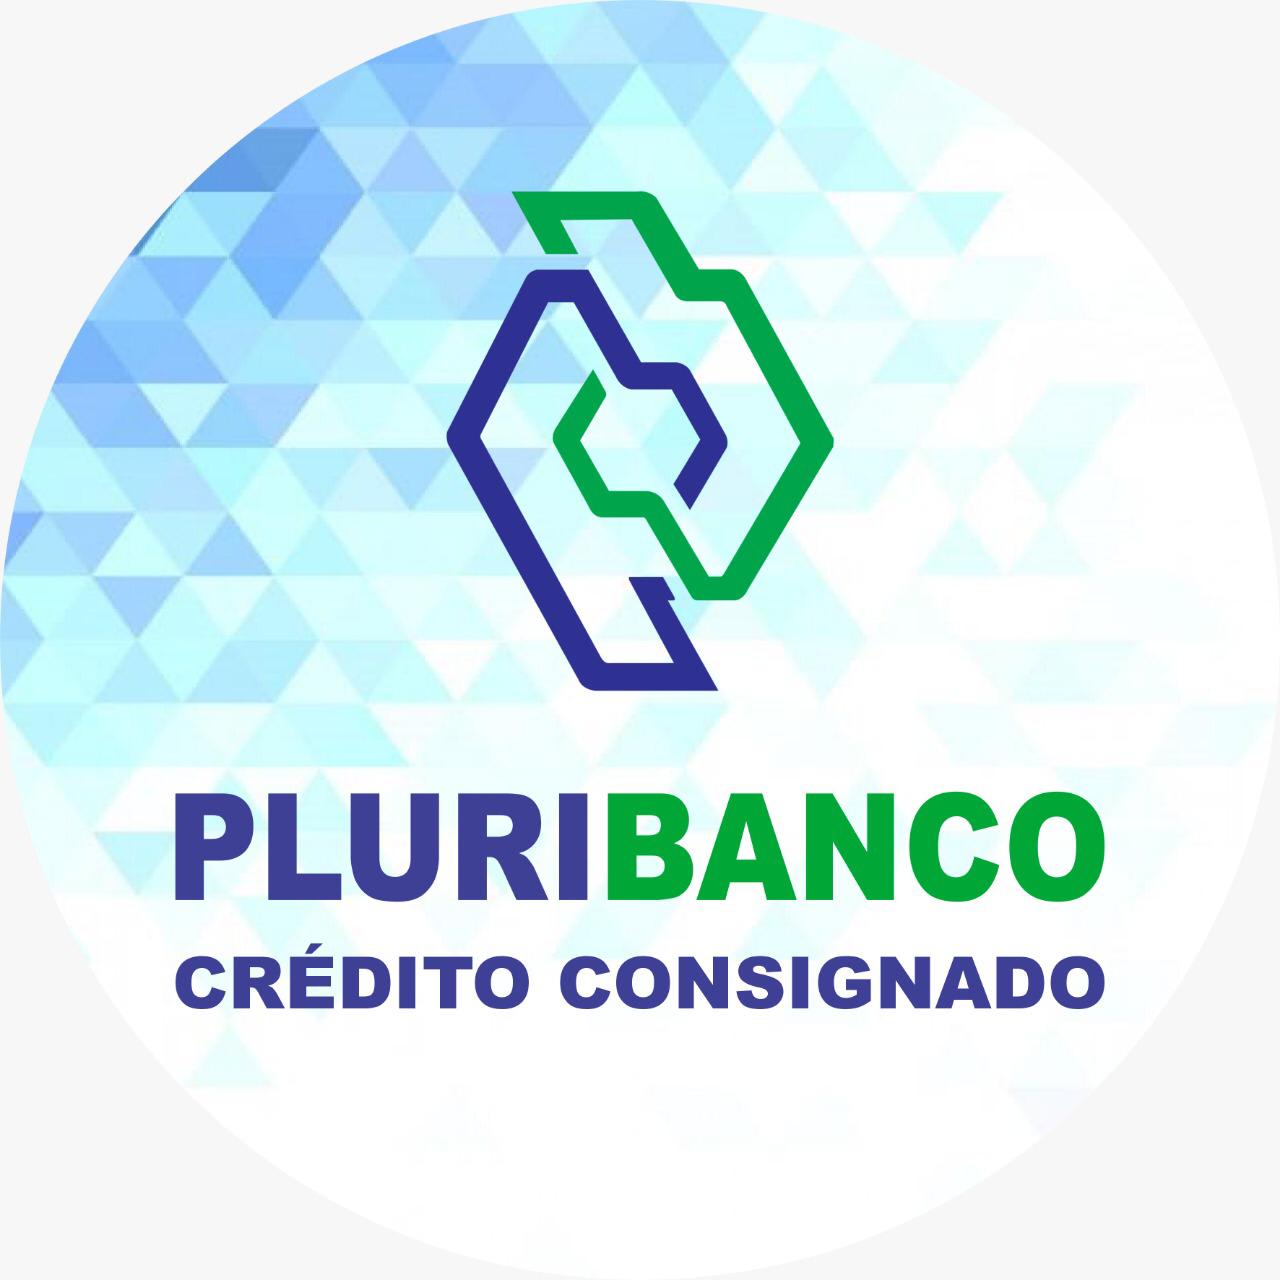 PluriBanco Crédito Consignado